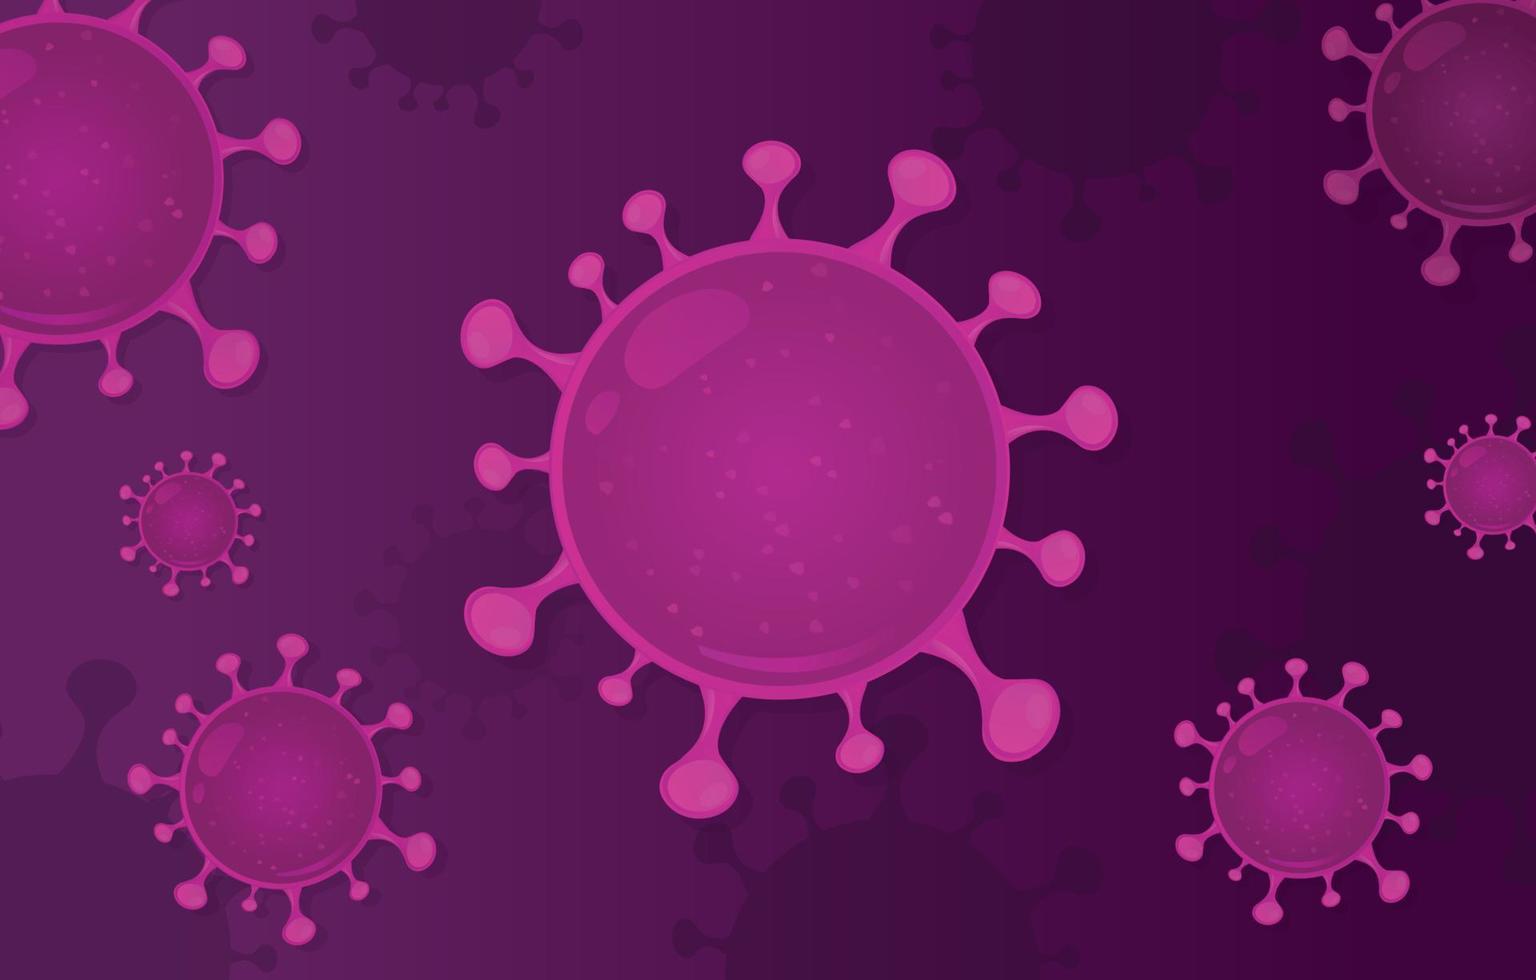 fond de grippe coronavirus. danger risque pour la santé publique maladie. épidémie de grippe. le concept de pandémie avec des cellules virales réalistes. visualisation vectorielle abstraite de covid-19 vecteur